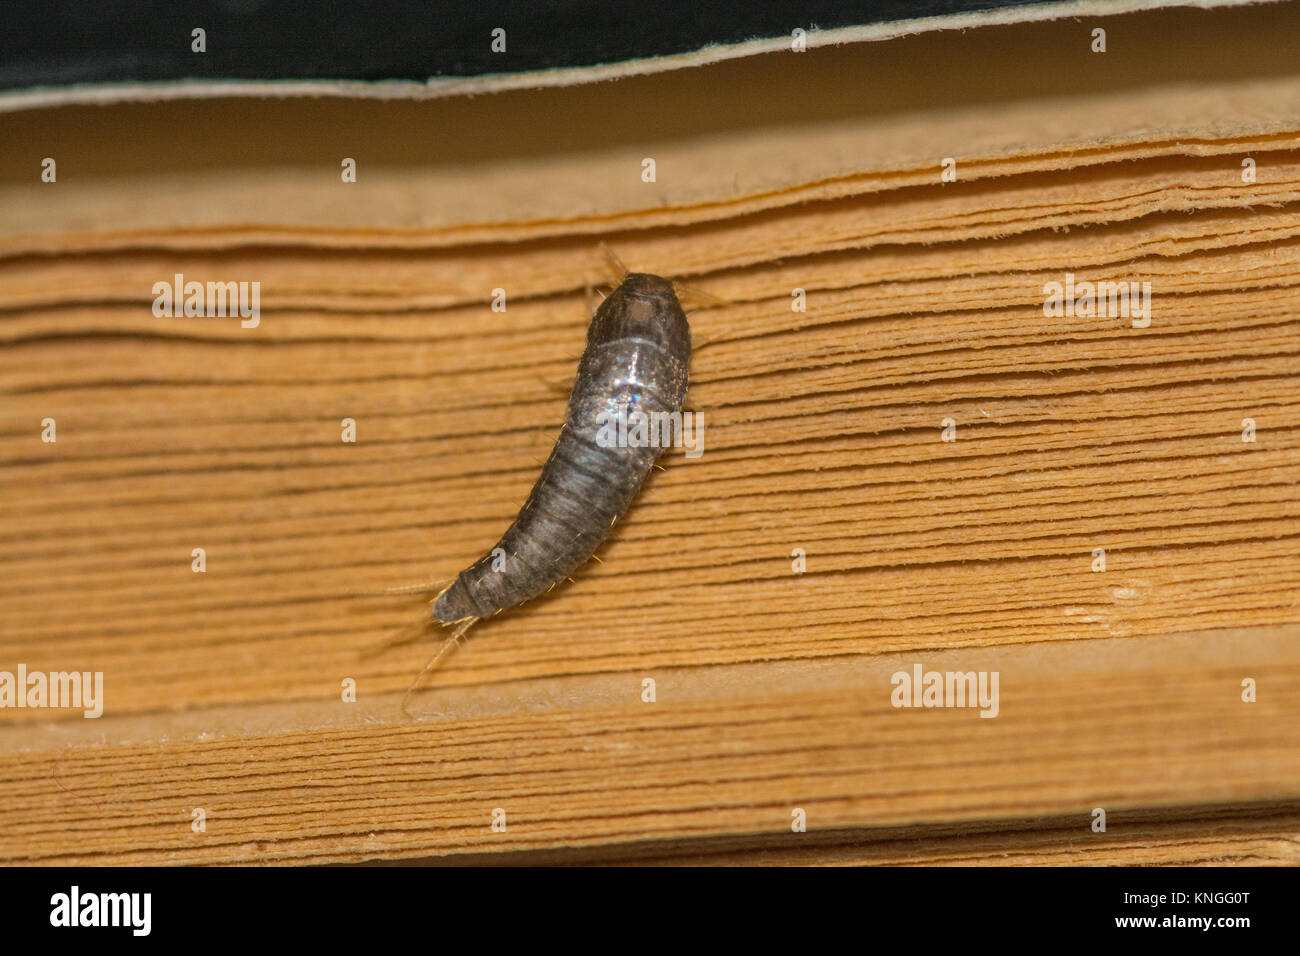 Gemeinsame Silberfische (Lepisma saccharina), Insekt, manchmal eines Haushalts Pest, auf einem alten Buch Stockfoto